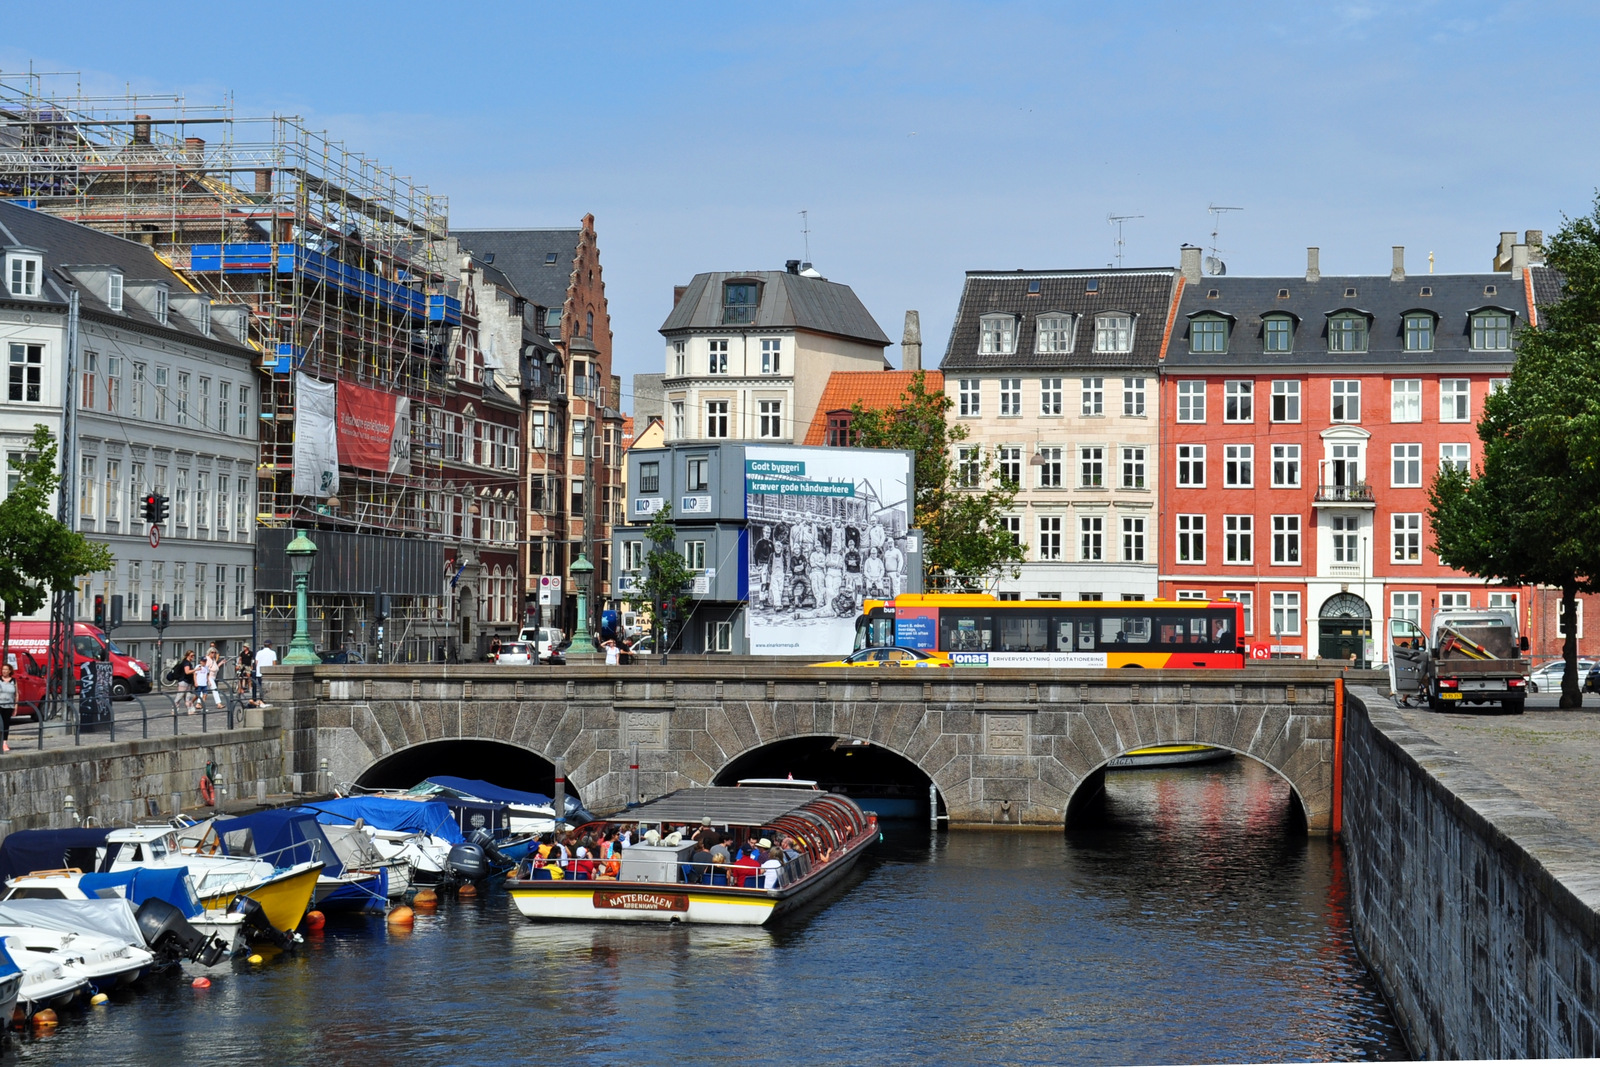 Дания первой в ЕС отменила все антиковидные ограничения внутри страны